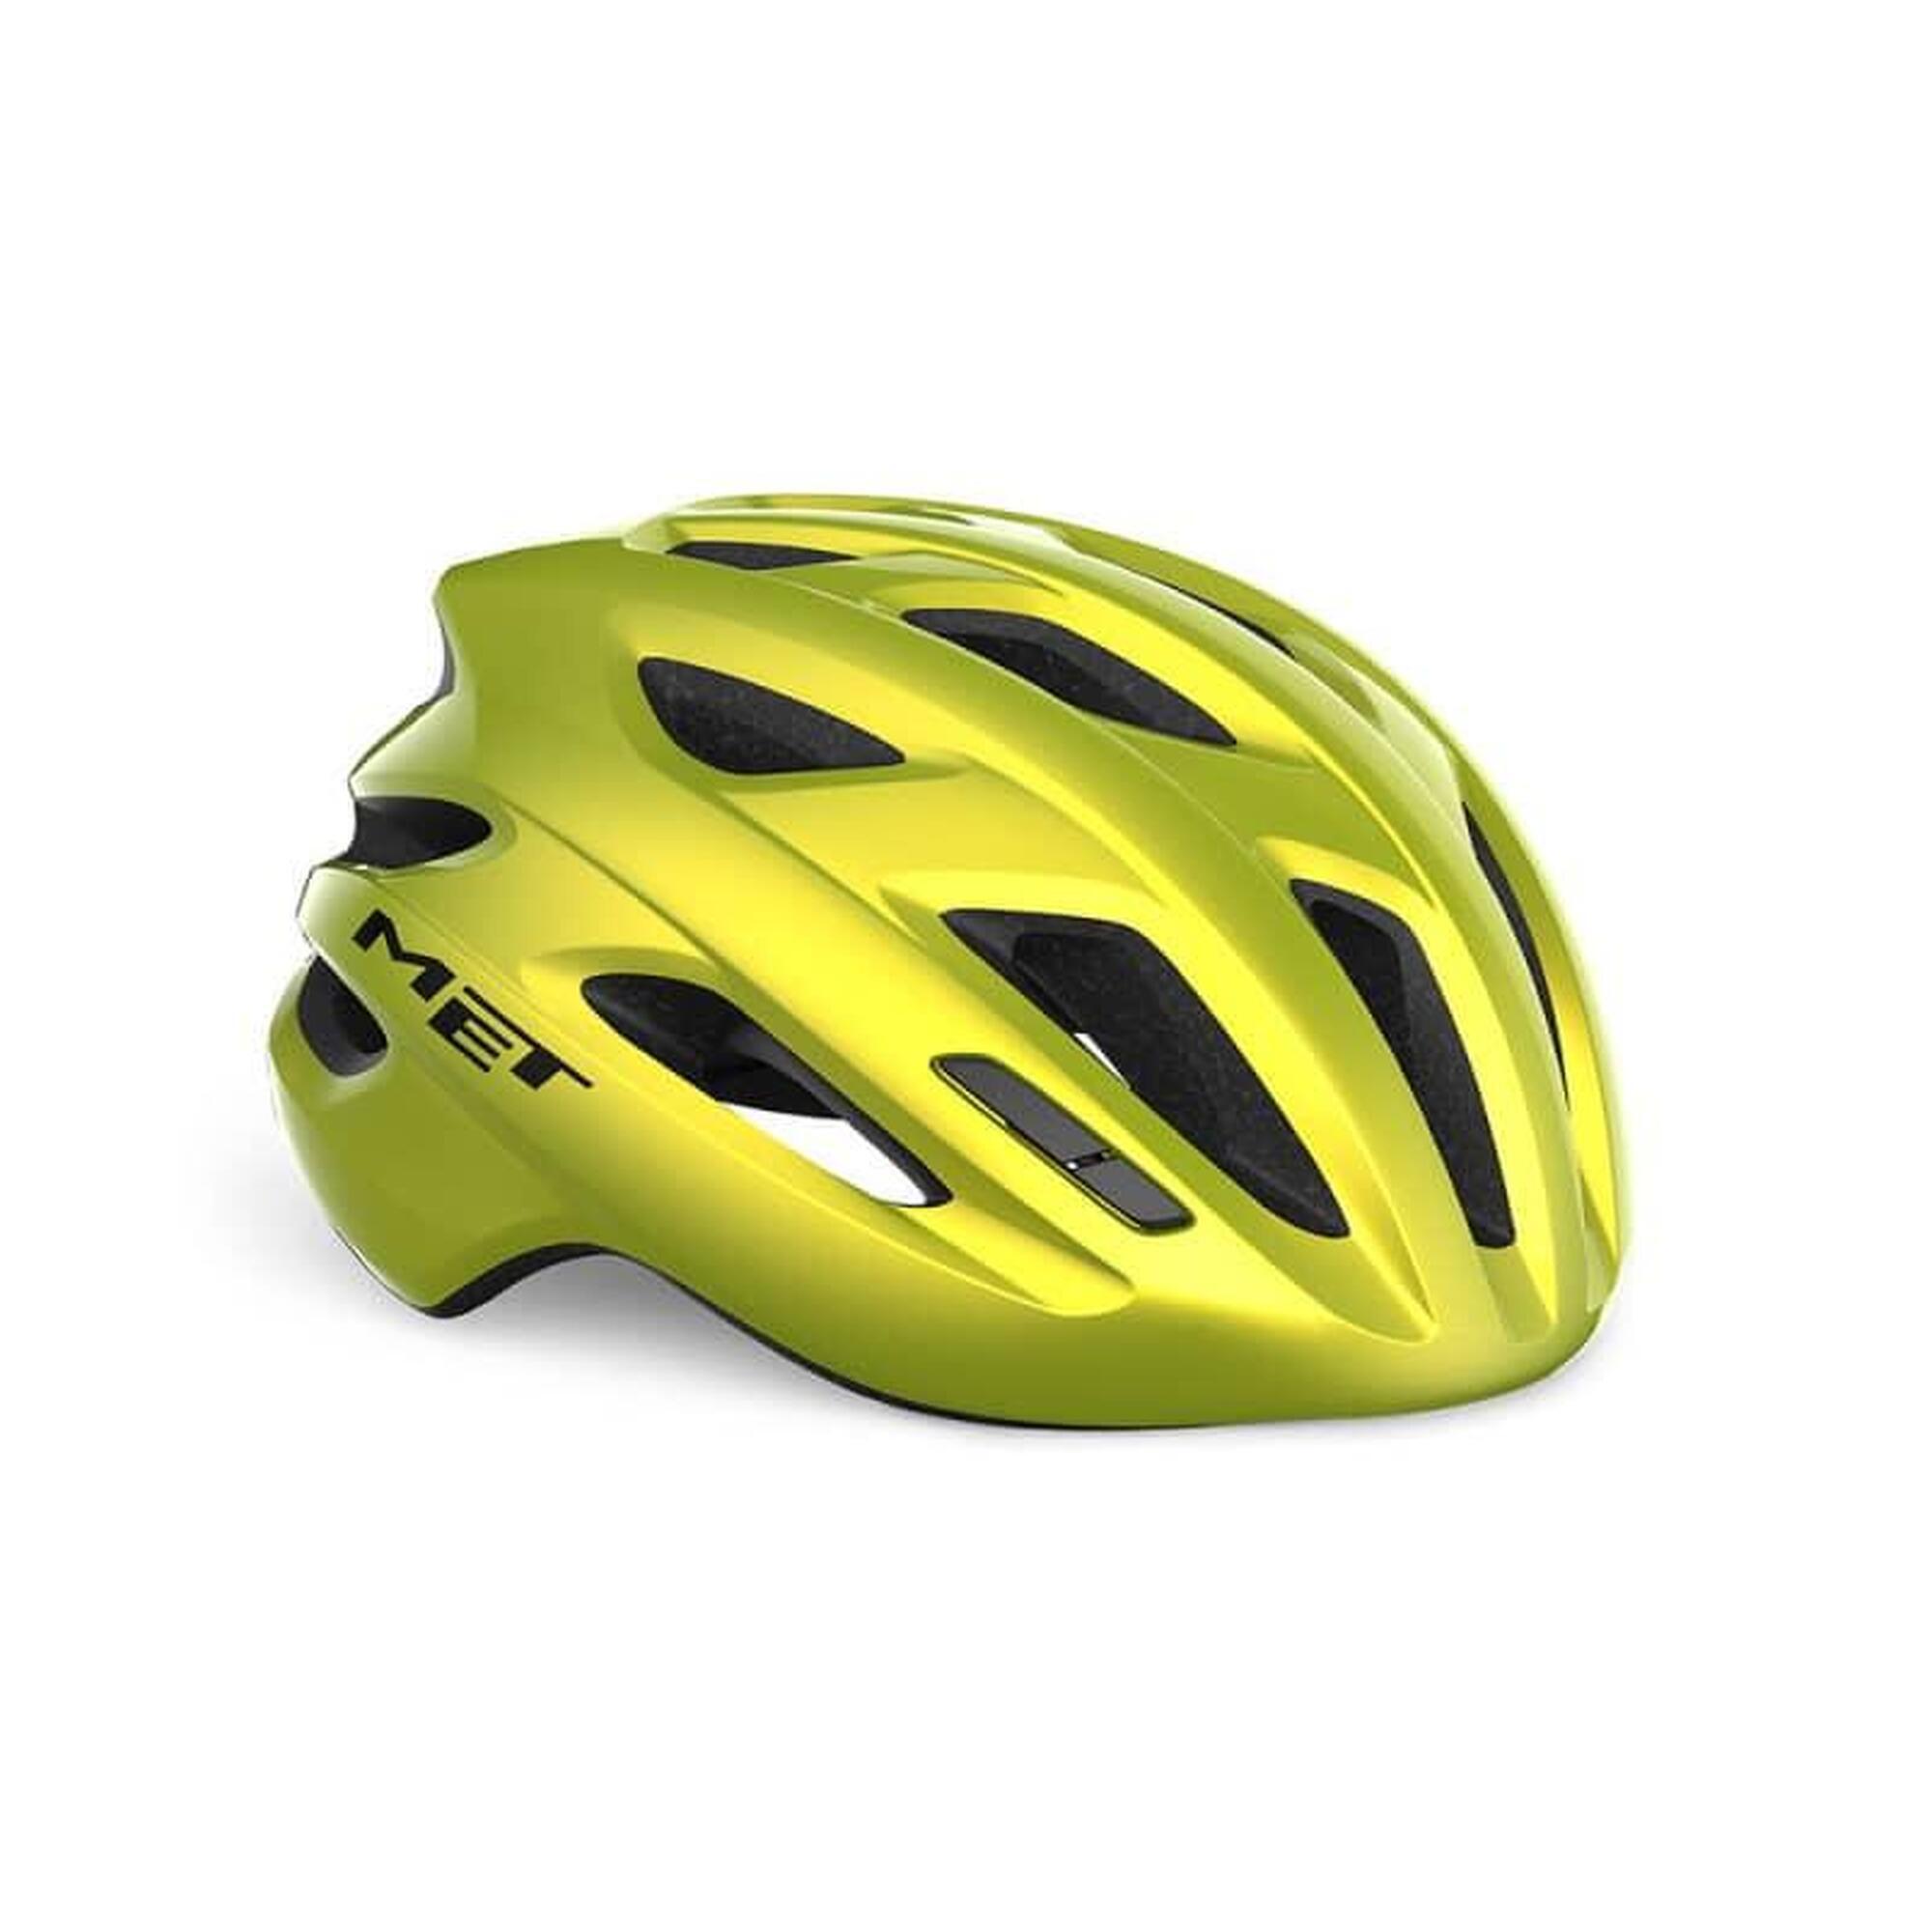 MET IDOLO MIPS Lime Yellow Metallic XL Road Bike Helmet 1/6